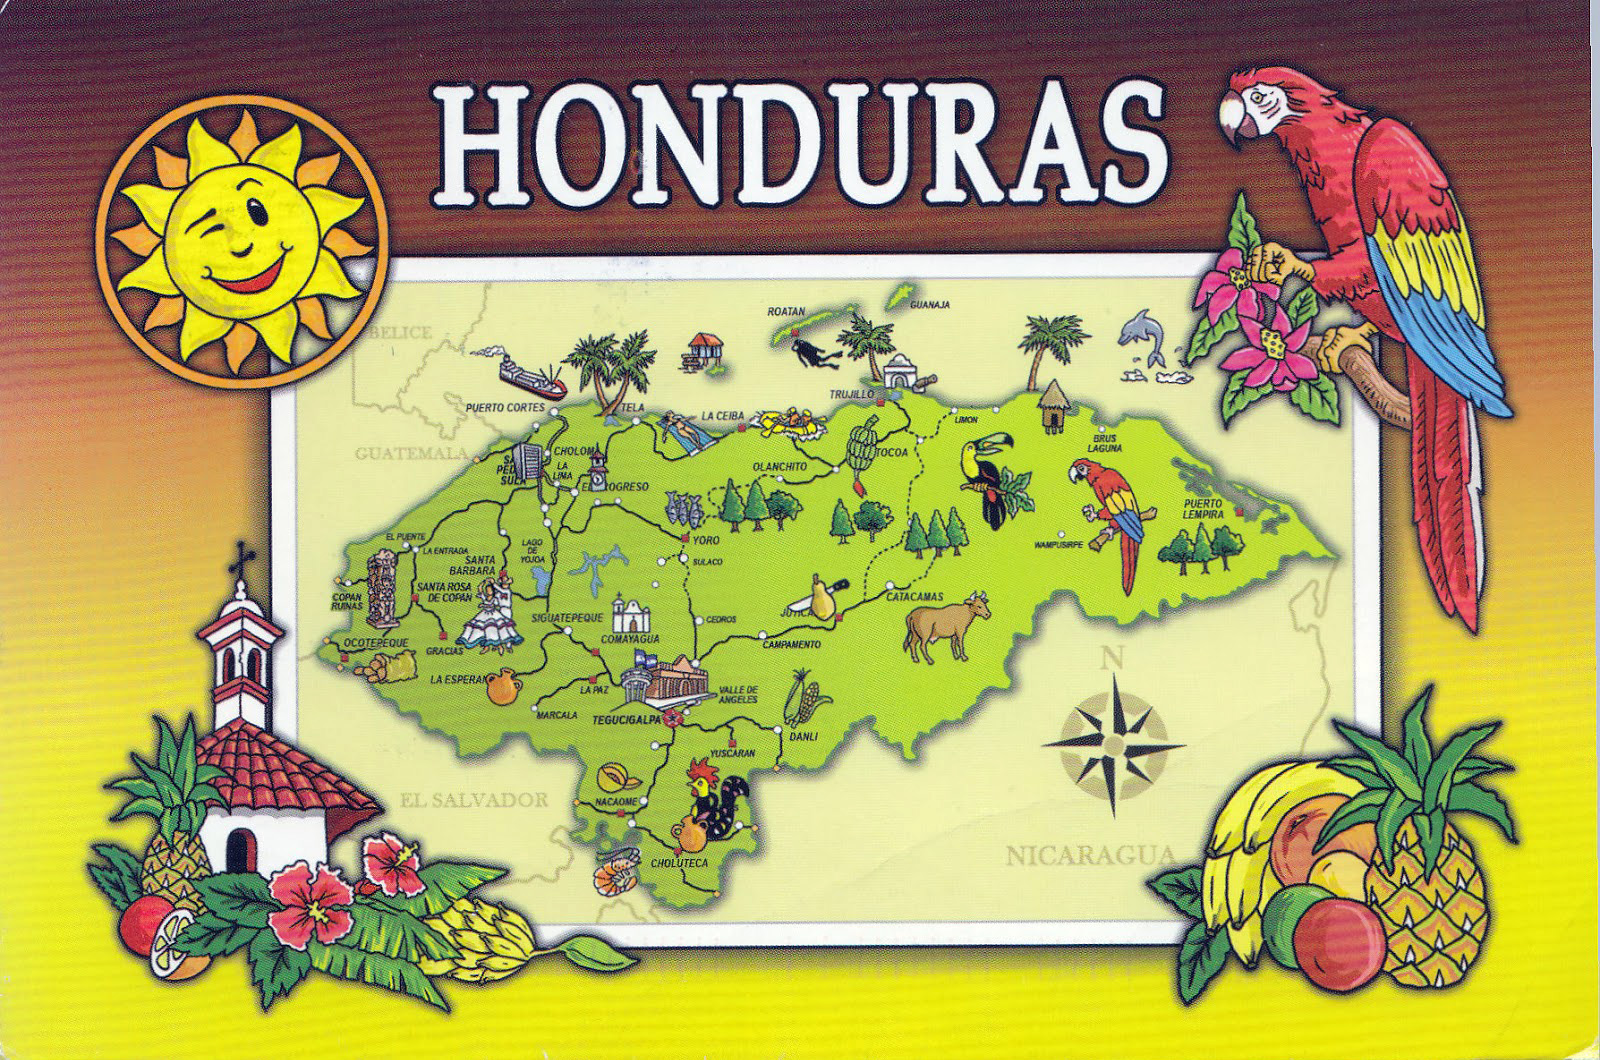 honduras tourist card